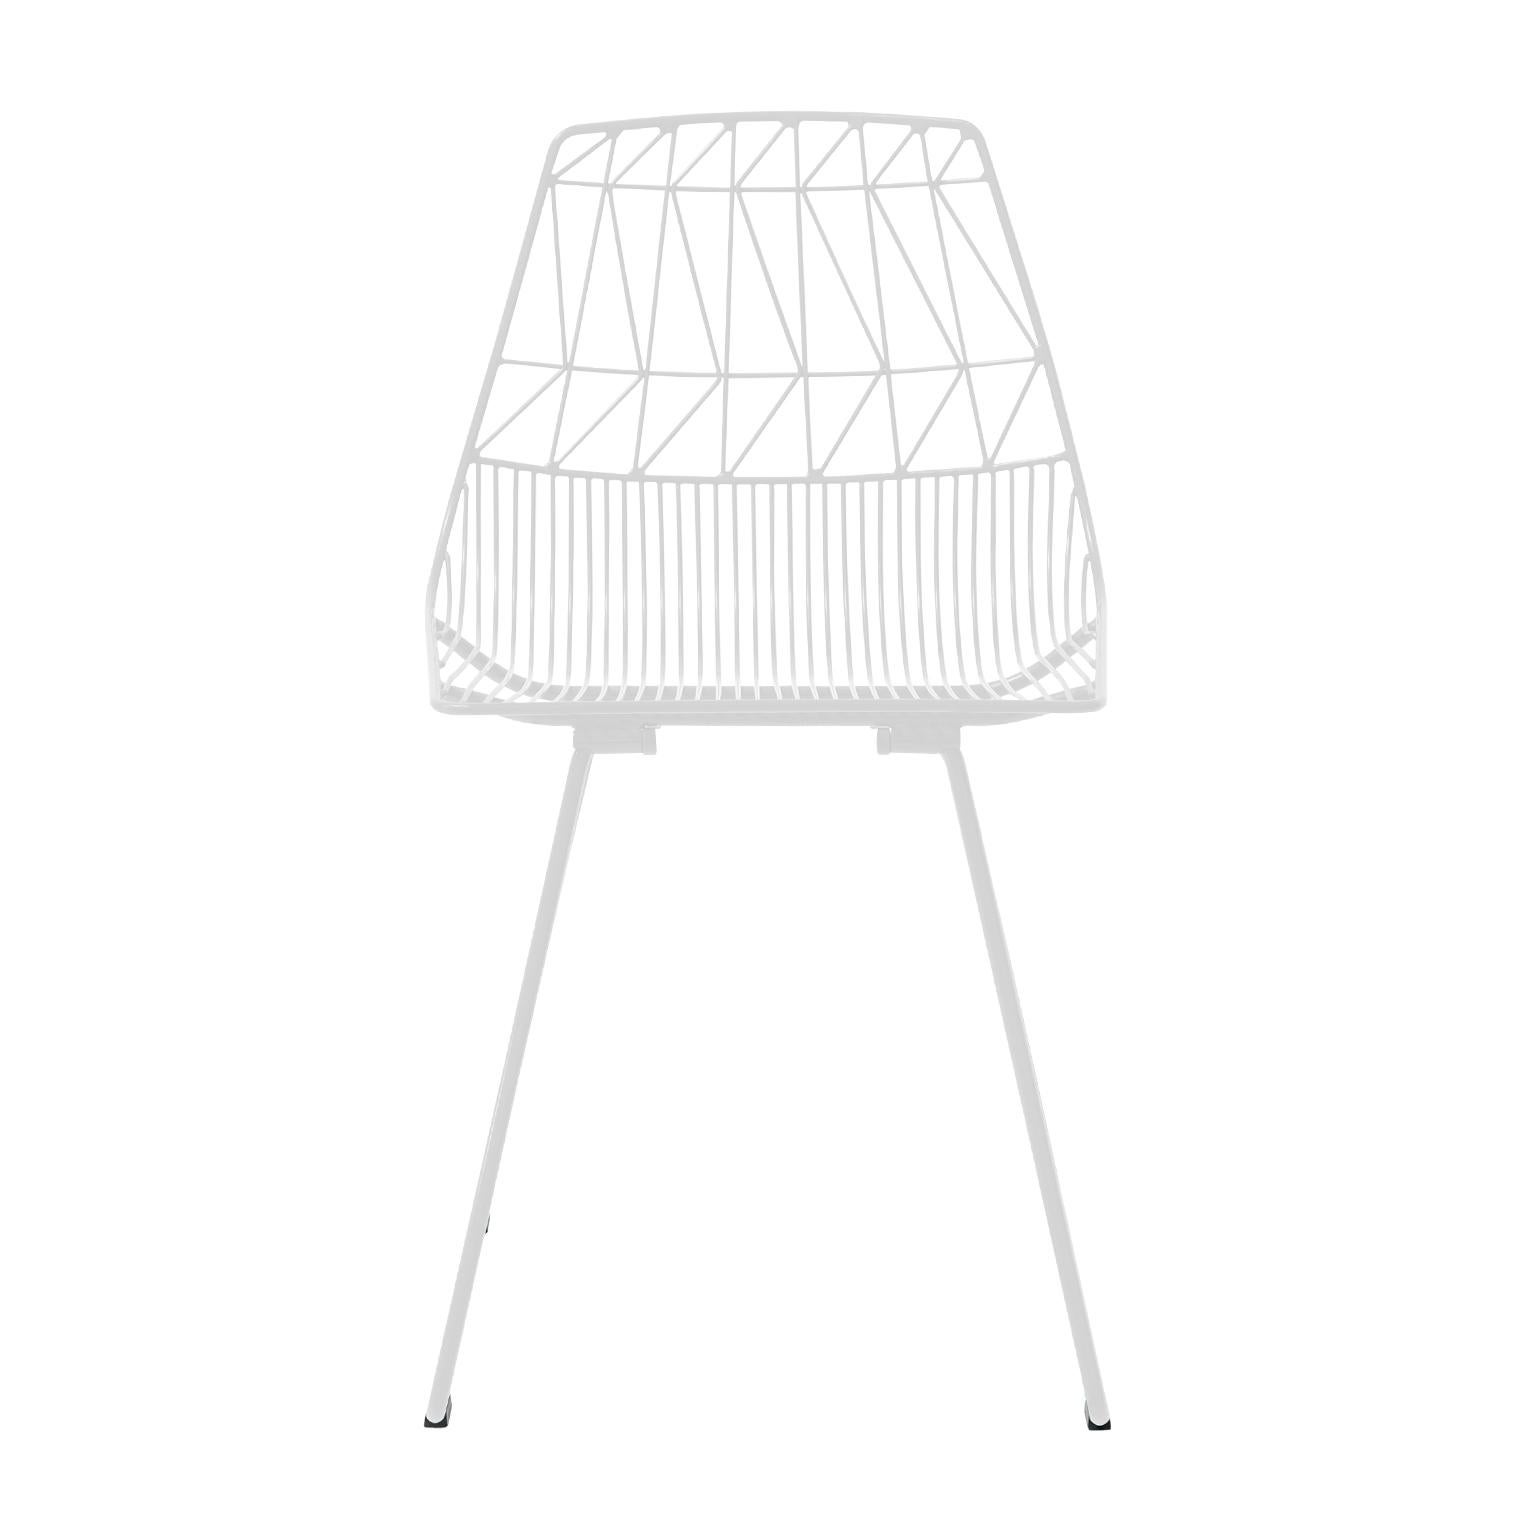 Cette nouvelle chaise classique, inspirée par les designs du milieu du siècle dernier, a révolutionné l'industrie du mobilier métallique grâce à son design épuré, audacieux et frais. La chaise d'appoint Lucy est durable pour les projets commerciaux